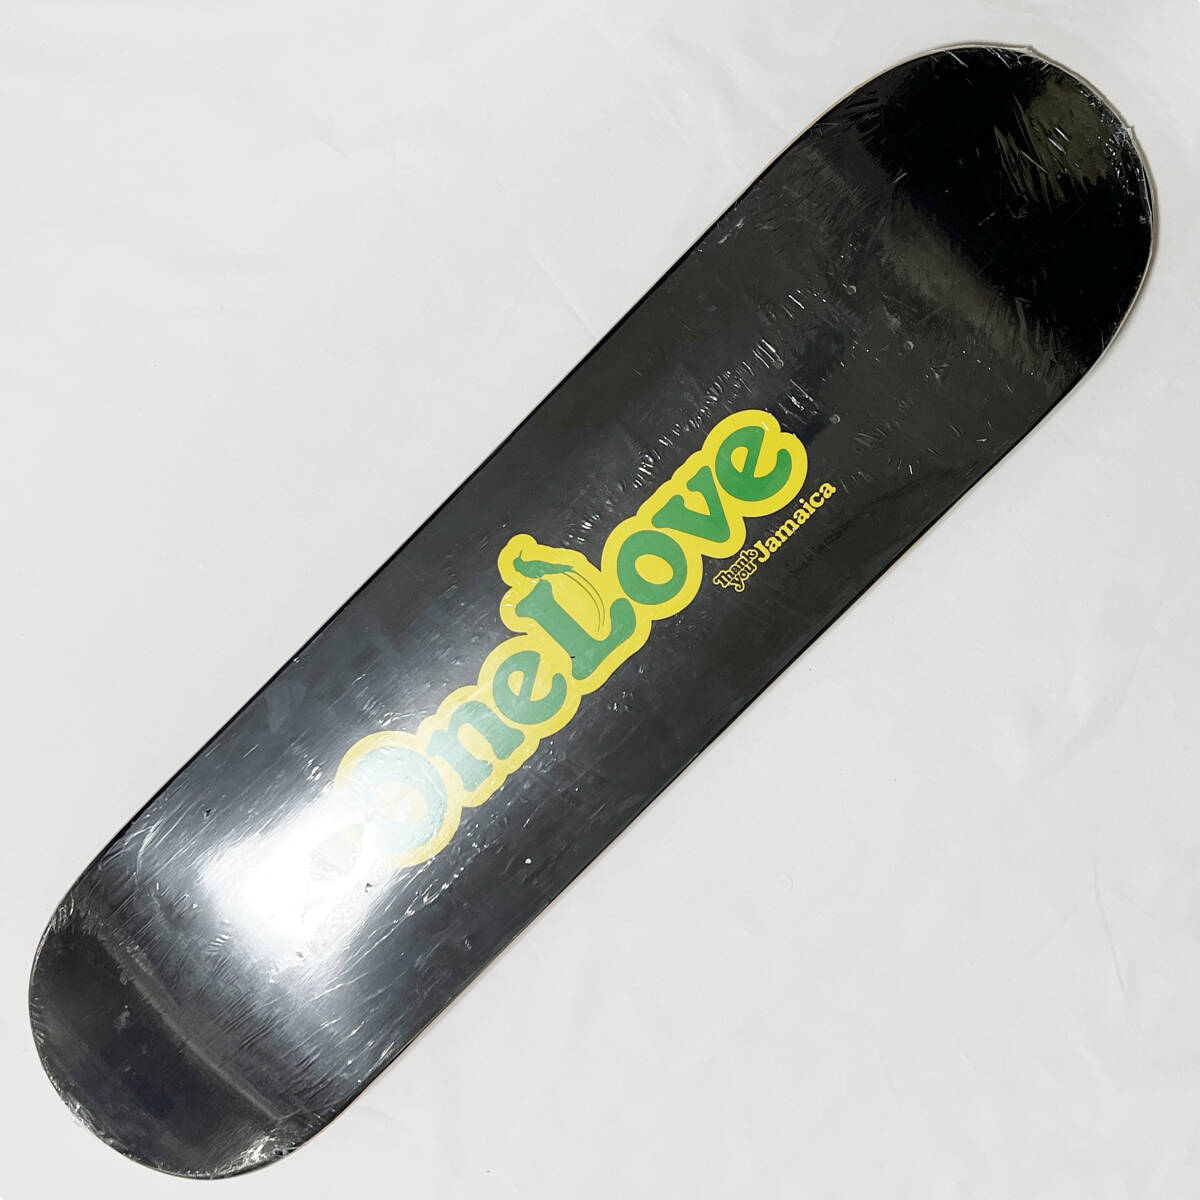 【新品】THANK YOU スケボー デッキ サンキュー 7.75 / JAMAICA / ONE LOVE スケートボード SKATE BOARD DECK の画像1